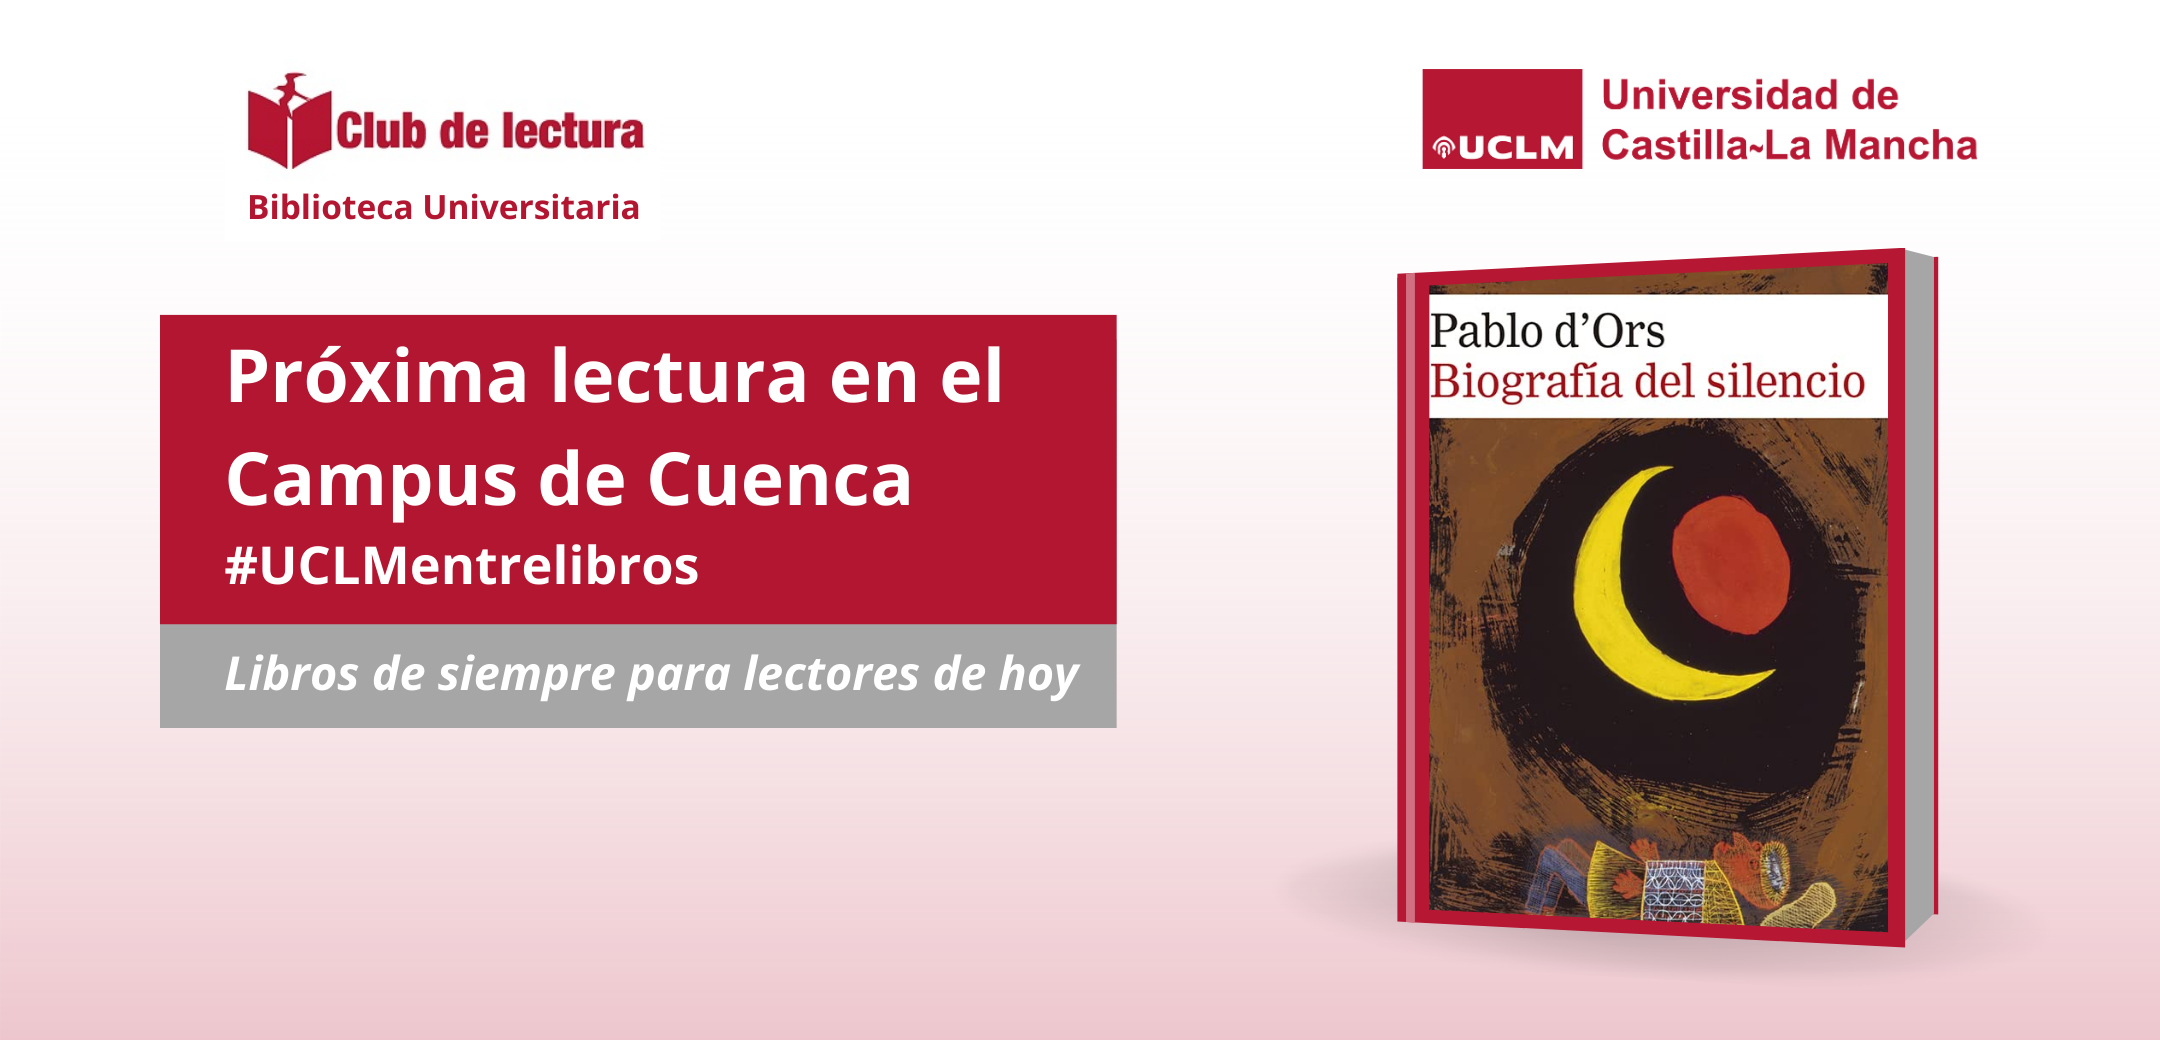 Club de lectura del campus de Cuenca